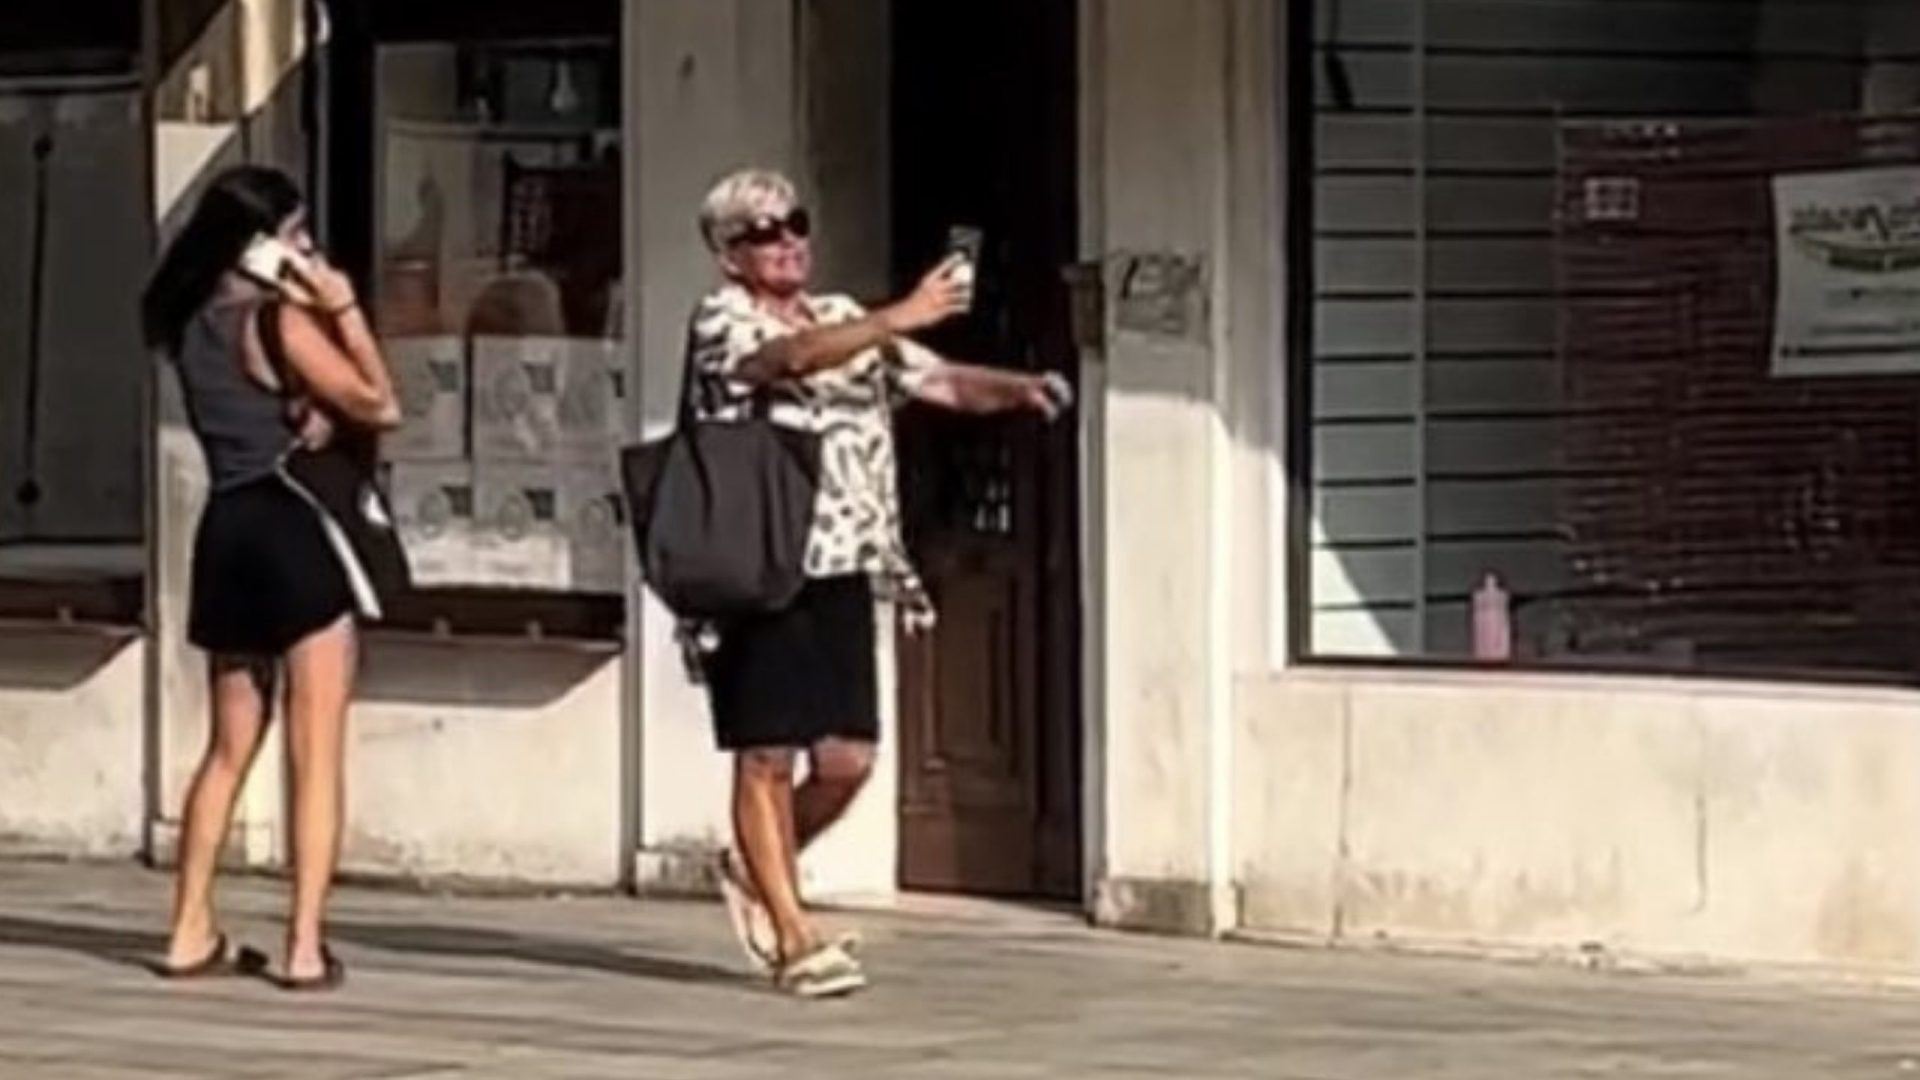 Pickpocket Nem a mais conhecida denunciante dos batedores de carteira está a salvo dos furtos em Veneza, na Itália - Foto: Reprodução/Tik Tok@london_content